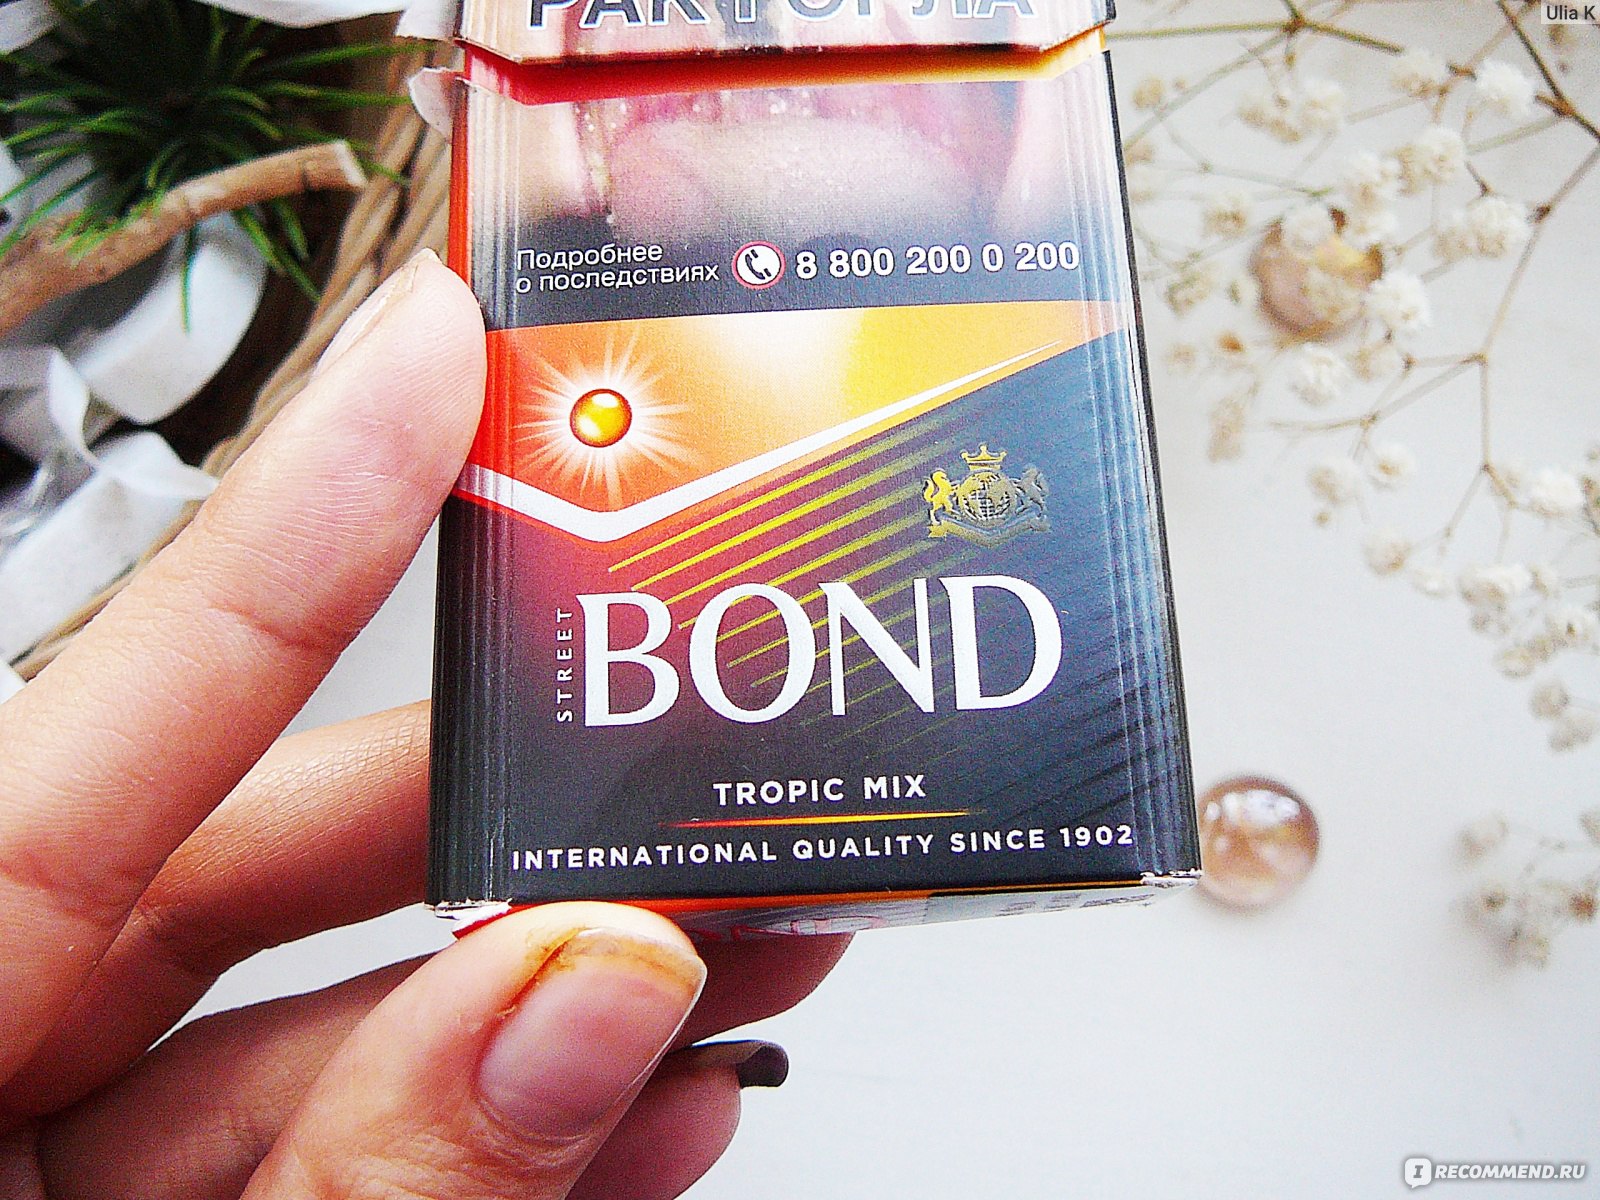 Лд с оранжевой кнопкой. Сигареты Bond Tropic Mix. Бонд компакт Тропик микс. Bond с оранжевой кнопкой. Сигареты Bond с оранжевой кнопкой.